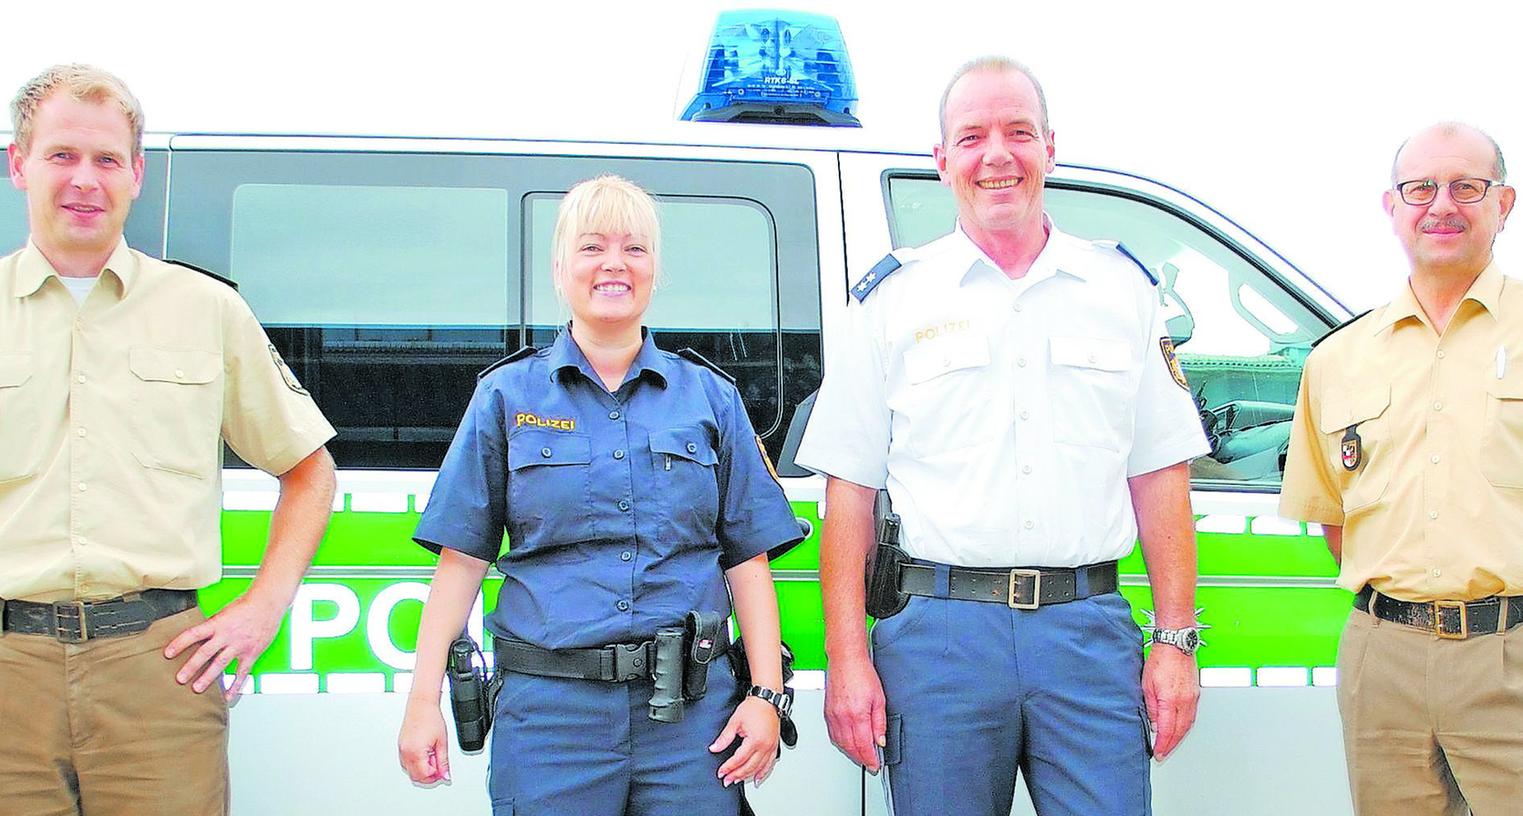 Zwei Schwabacher testen die blaue Polizei-Uniform